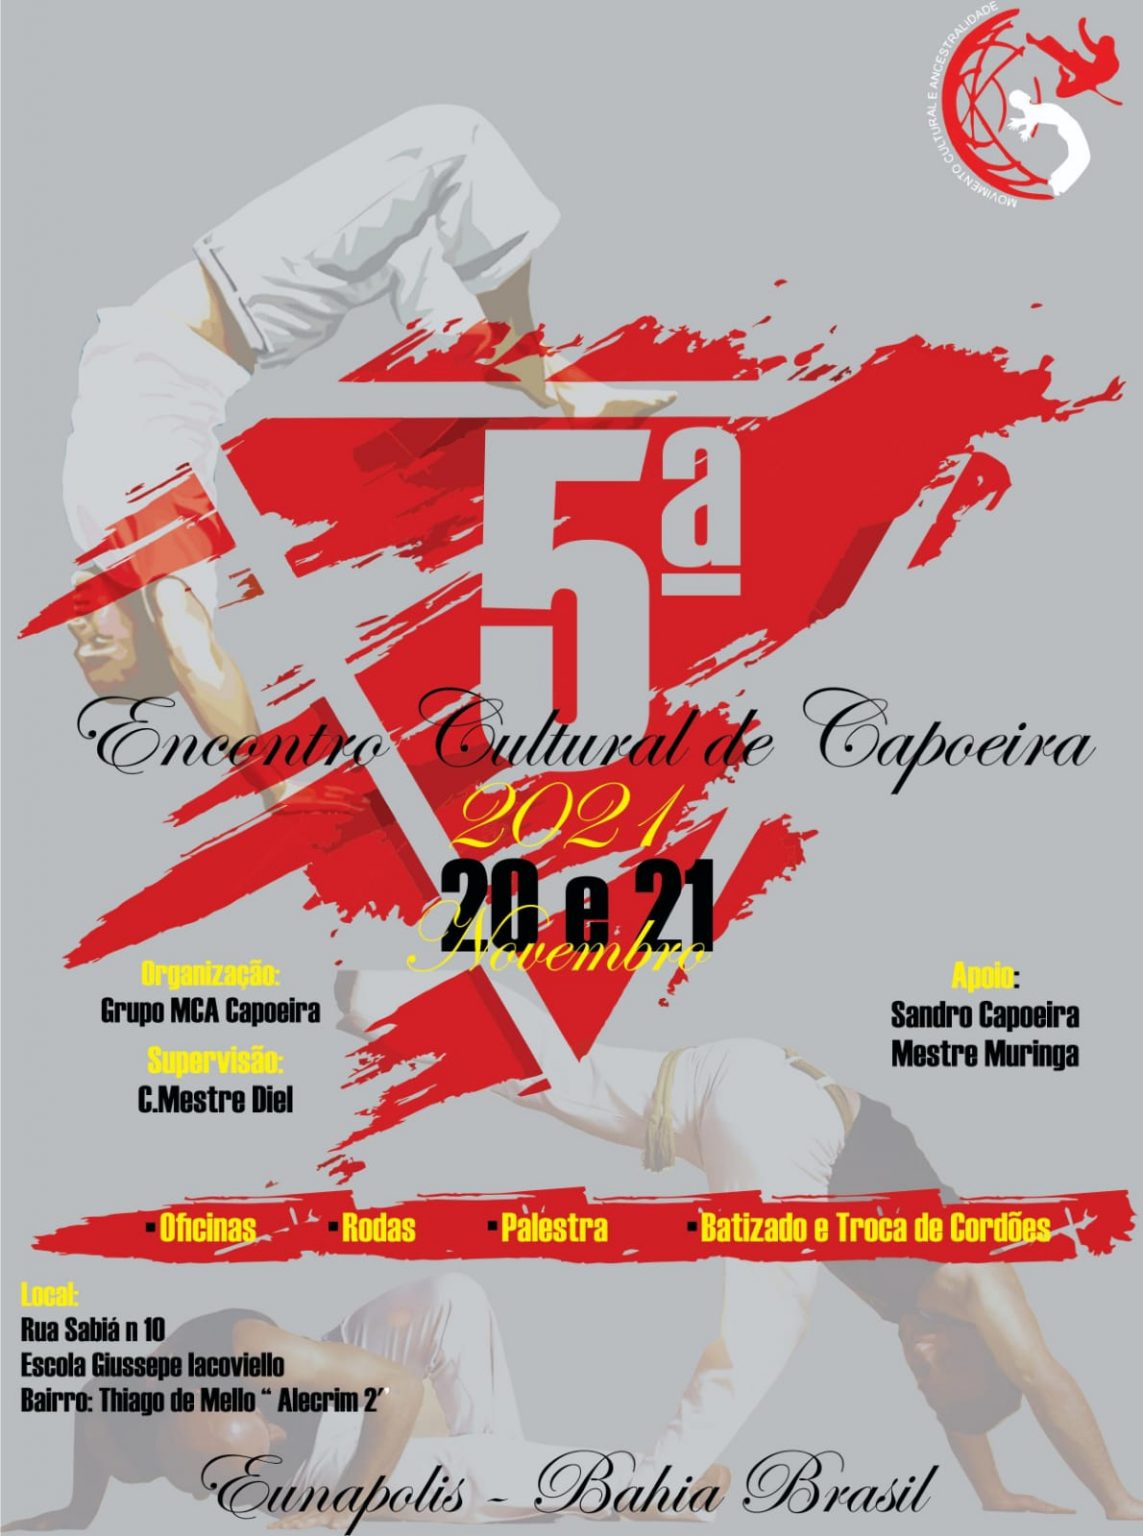 EUNÁPOLIS - capoeiristas se reúnem no 5º Encontro Cultural de Capoeira dias 20 e 21 11